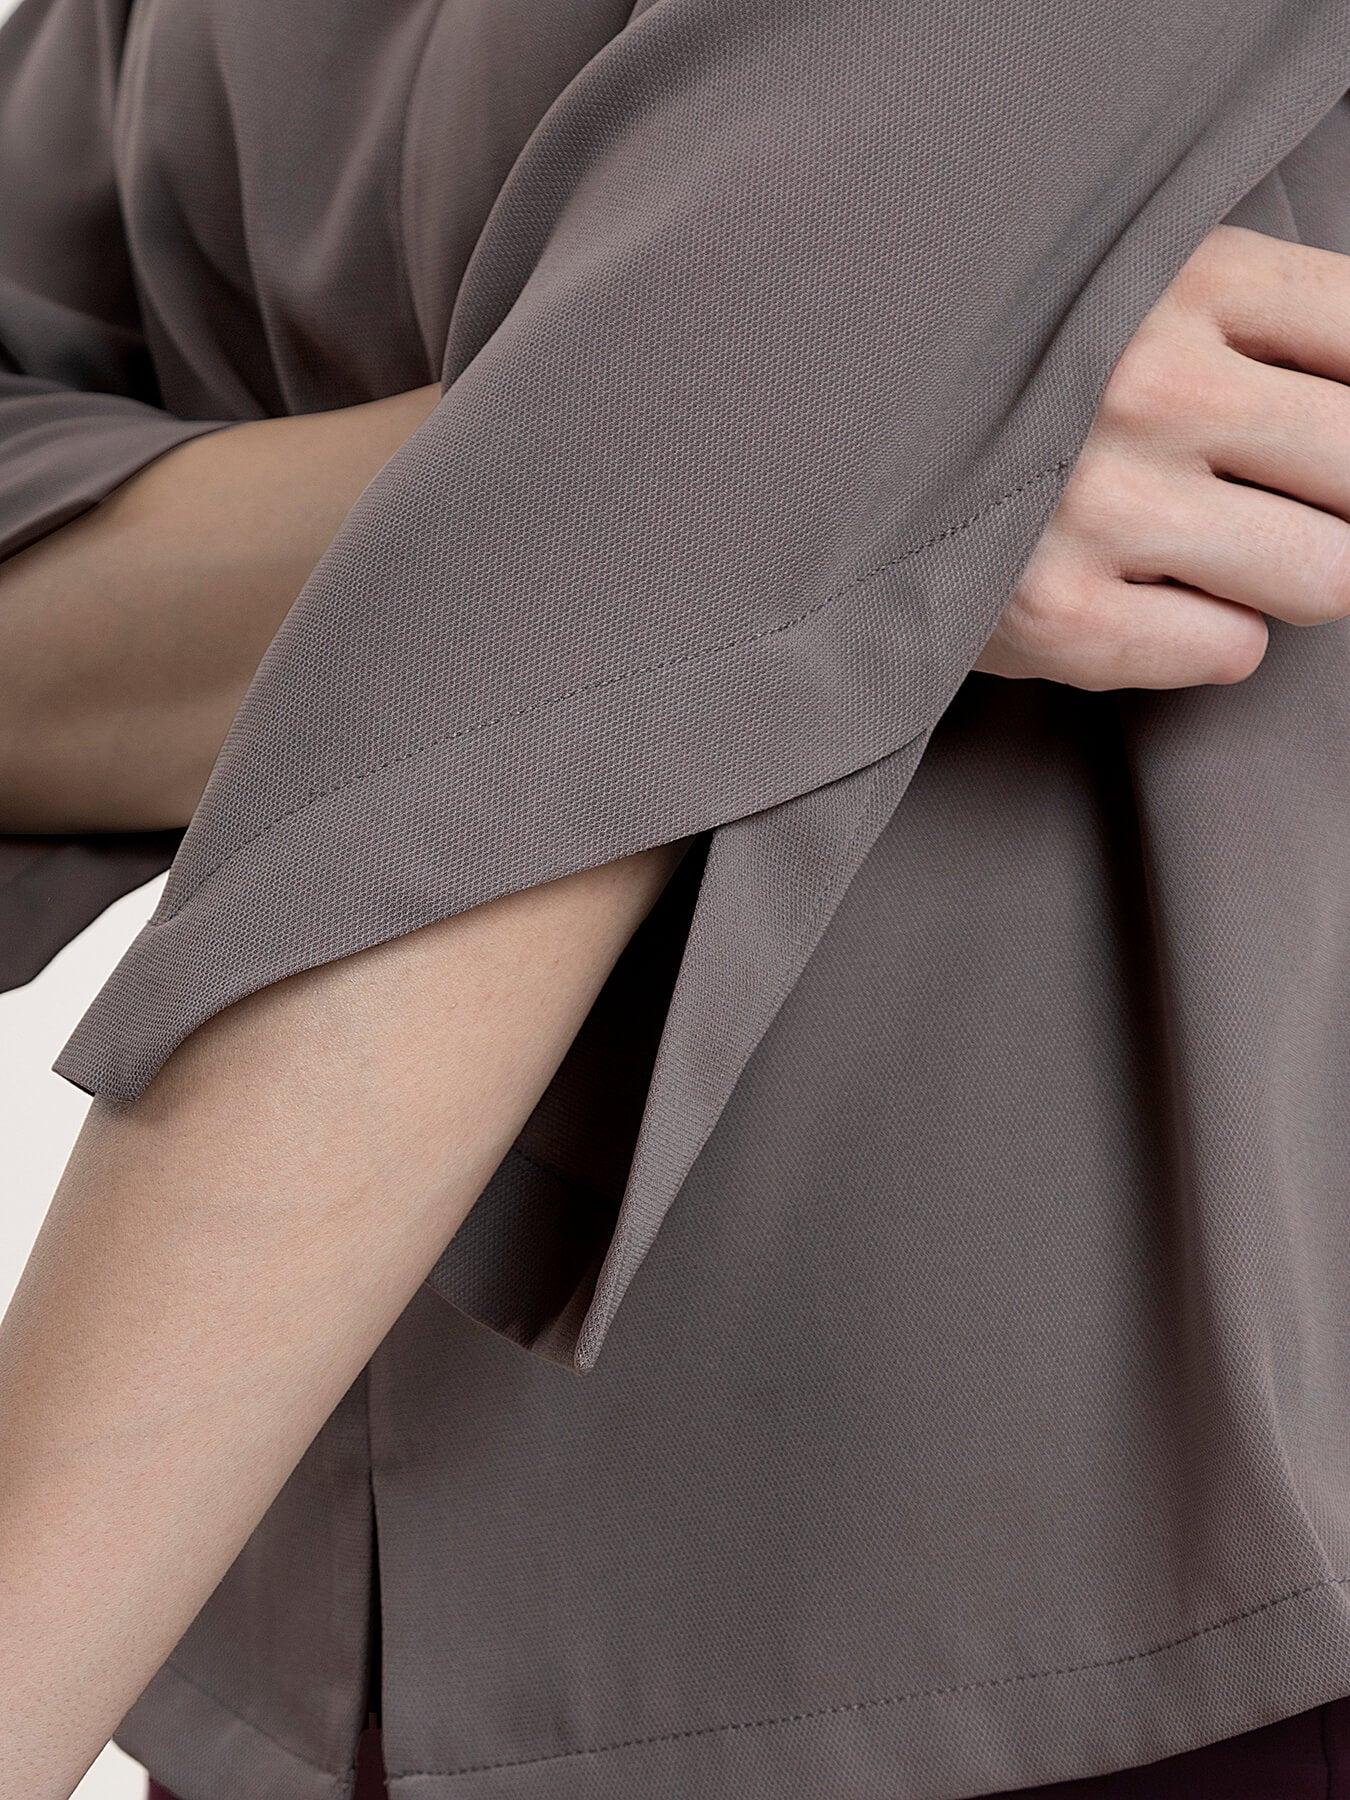 Georgette Pleat Detail Top - Grey| Formal Tops